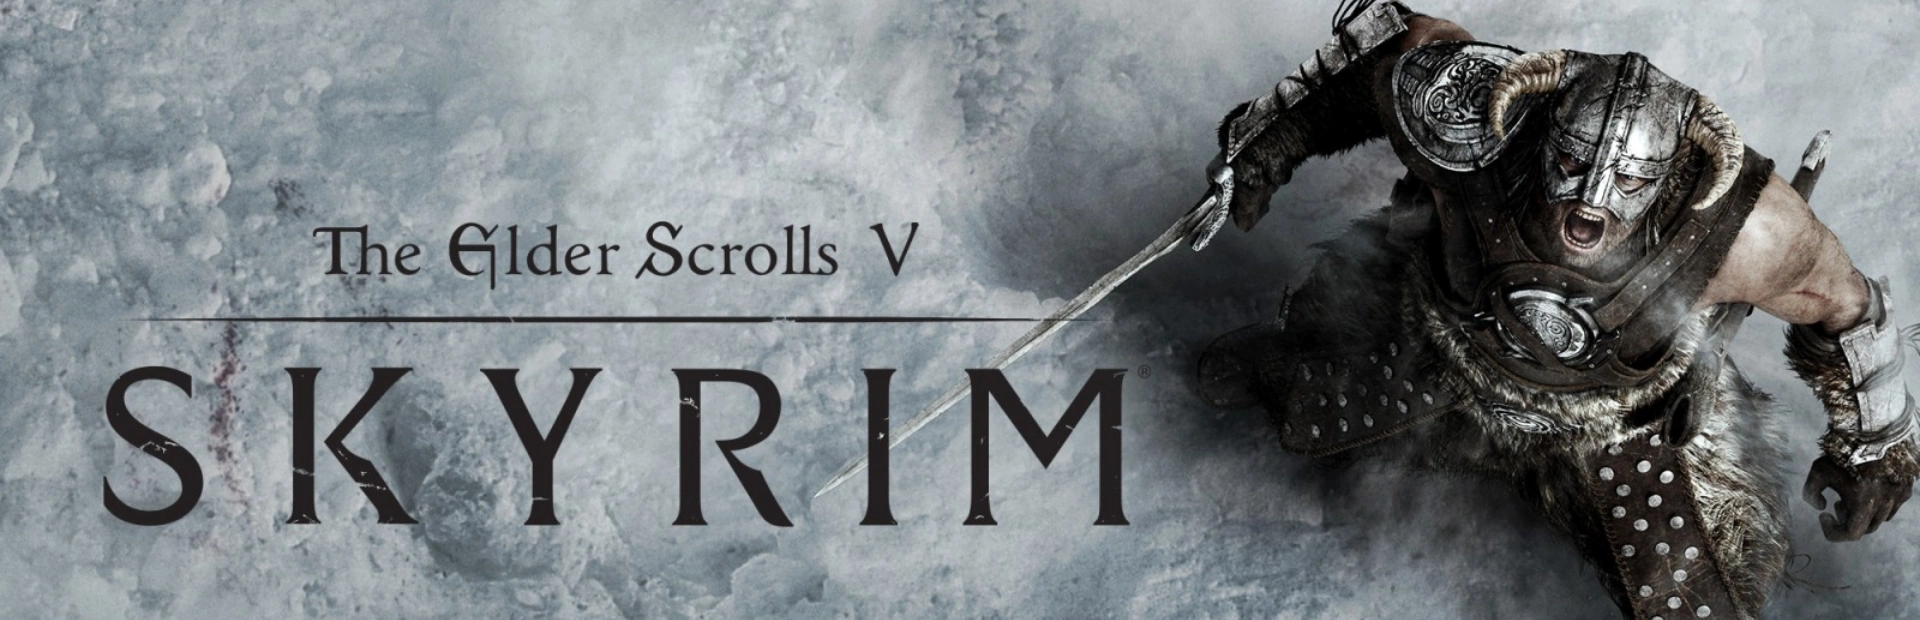 The Elder Scrolls V Skyrim6.banner3